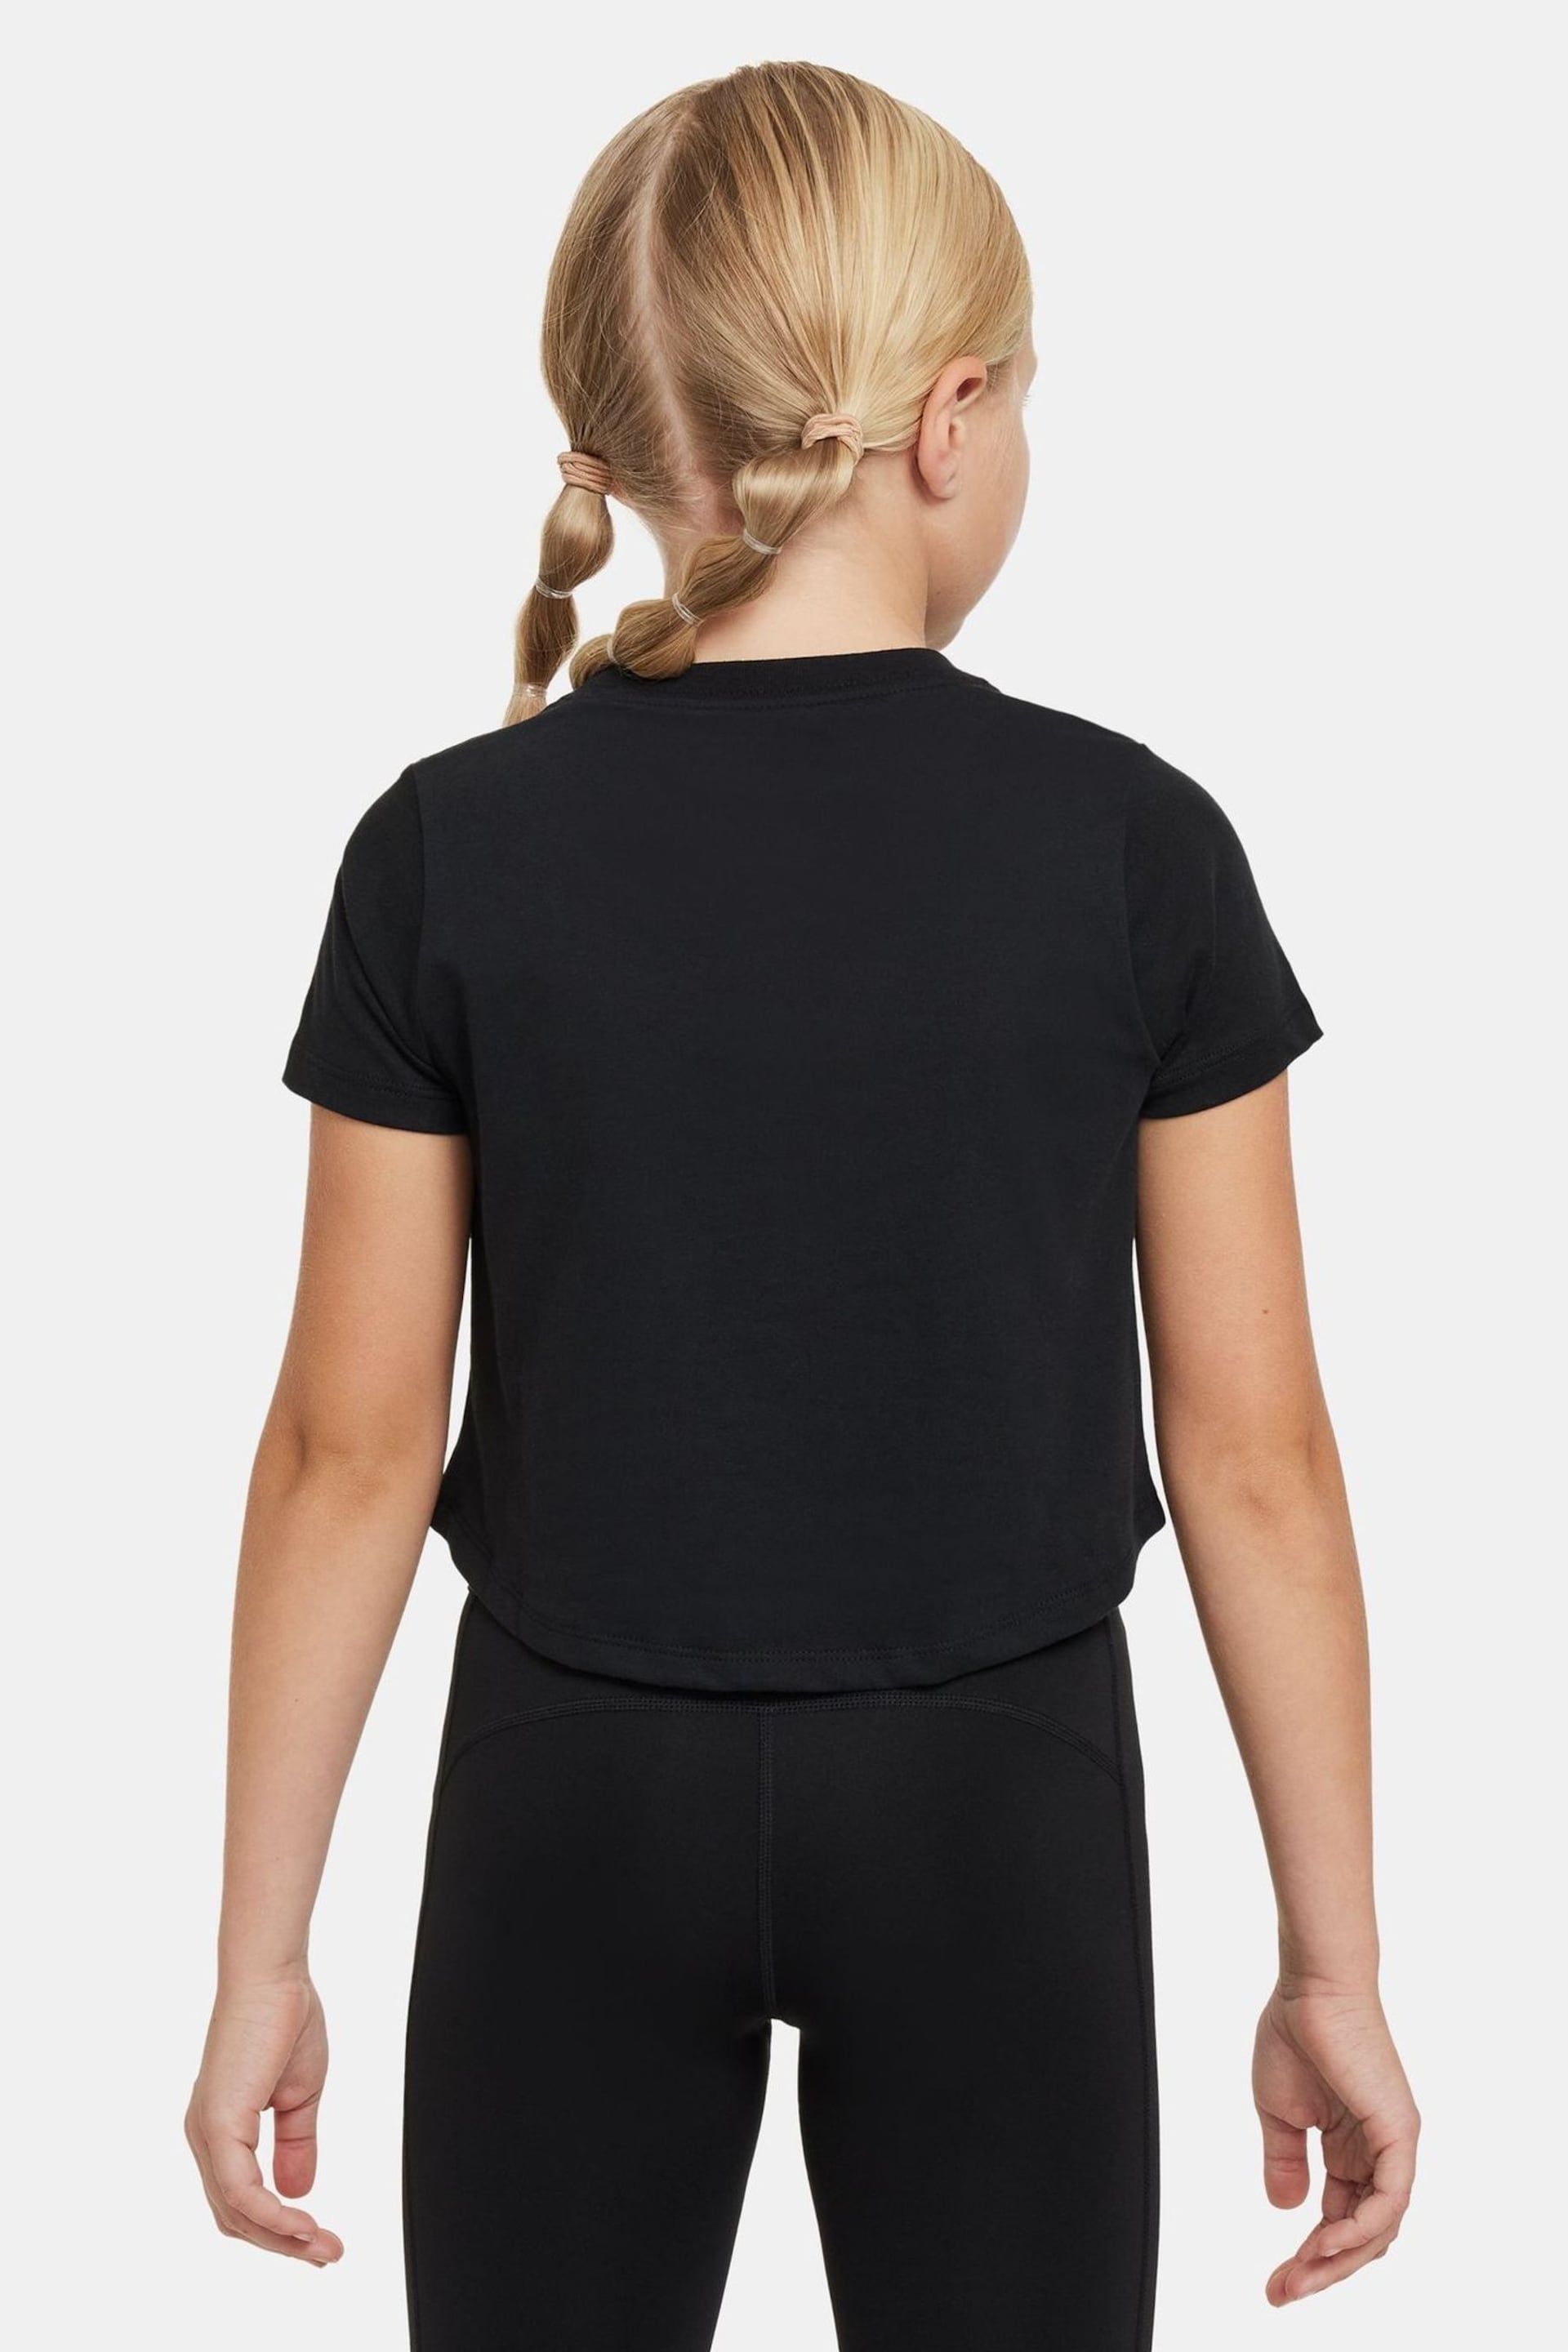 Nike Black Pro Cropped T-Shirt - Image 2 of 4